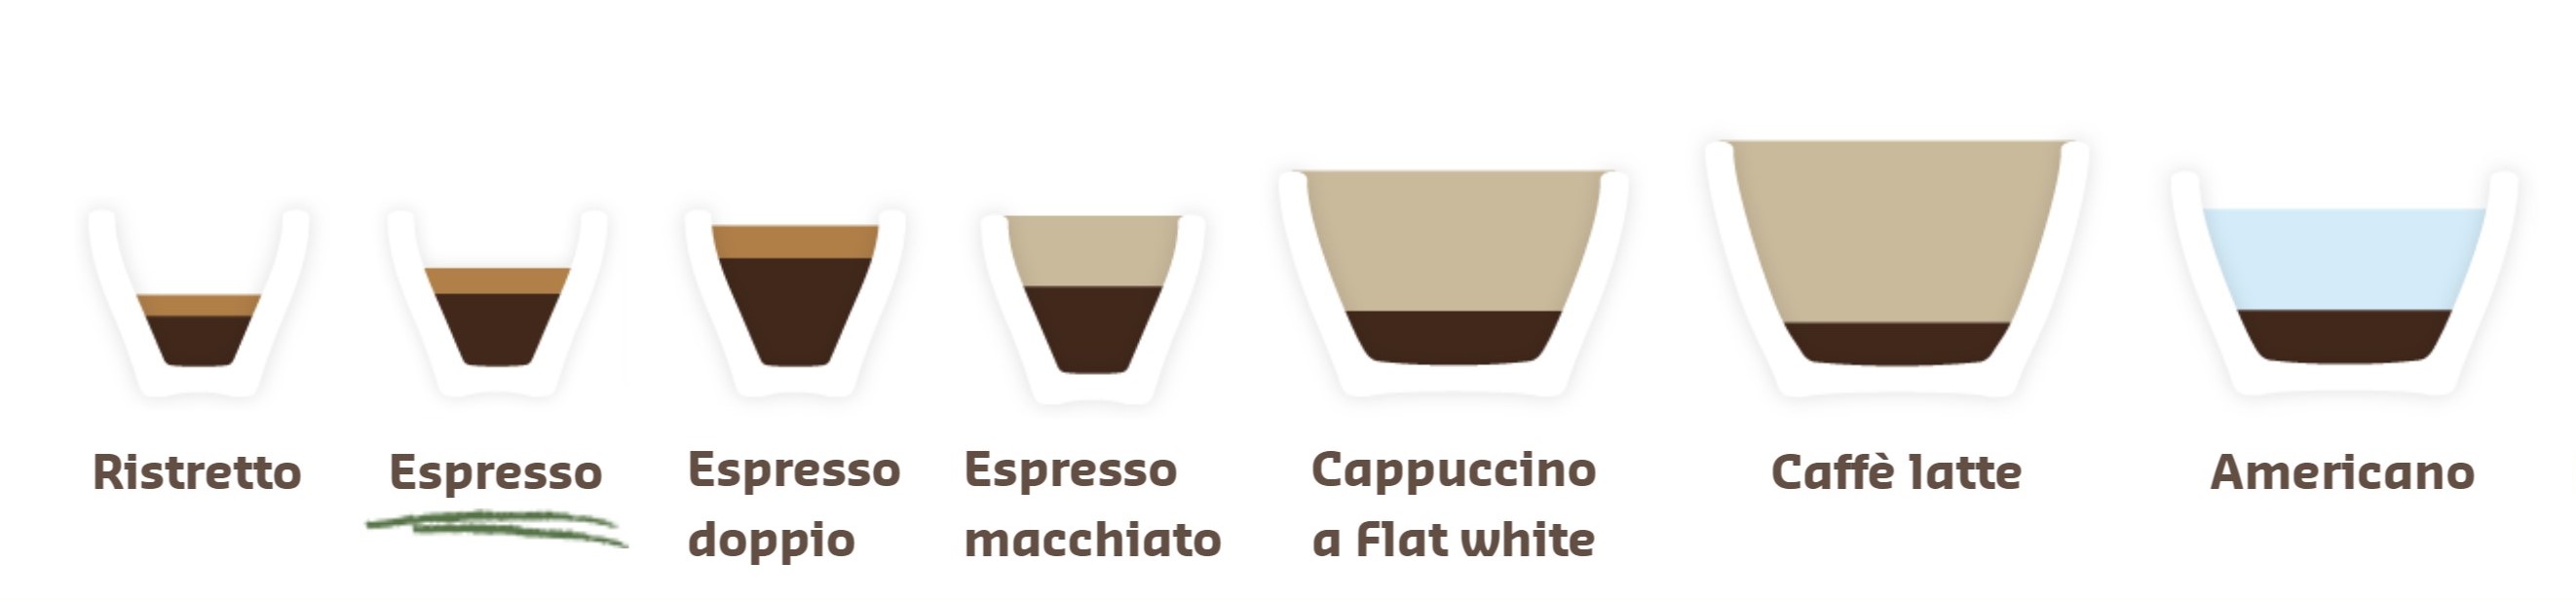 Infografika: kávové nápoje na bázi espressa